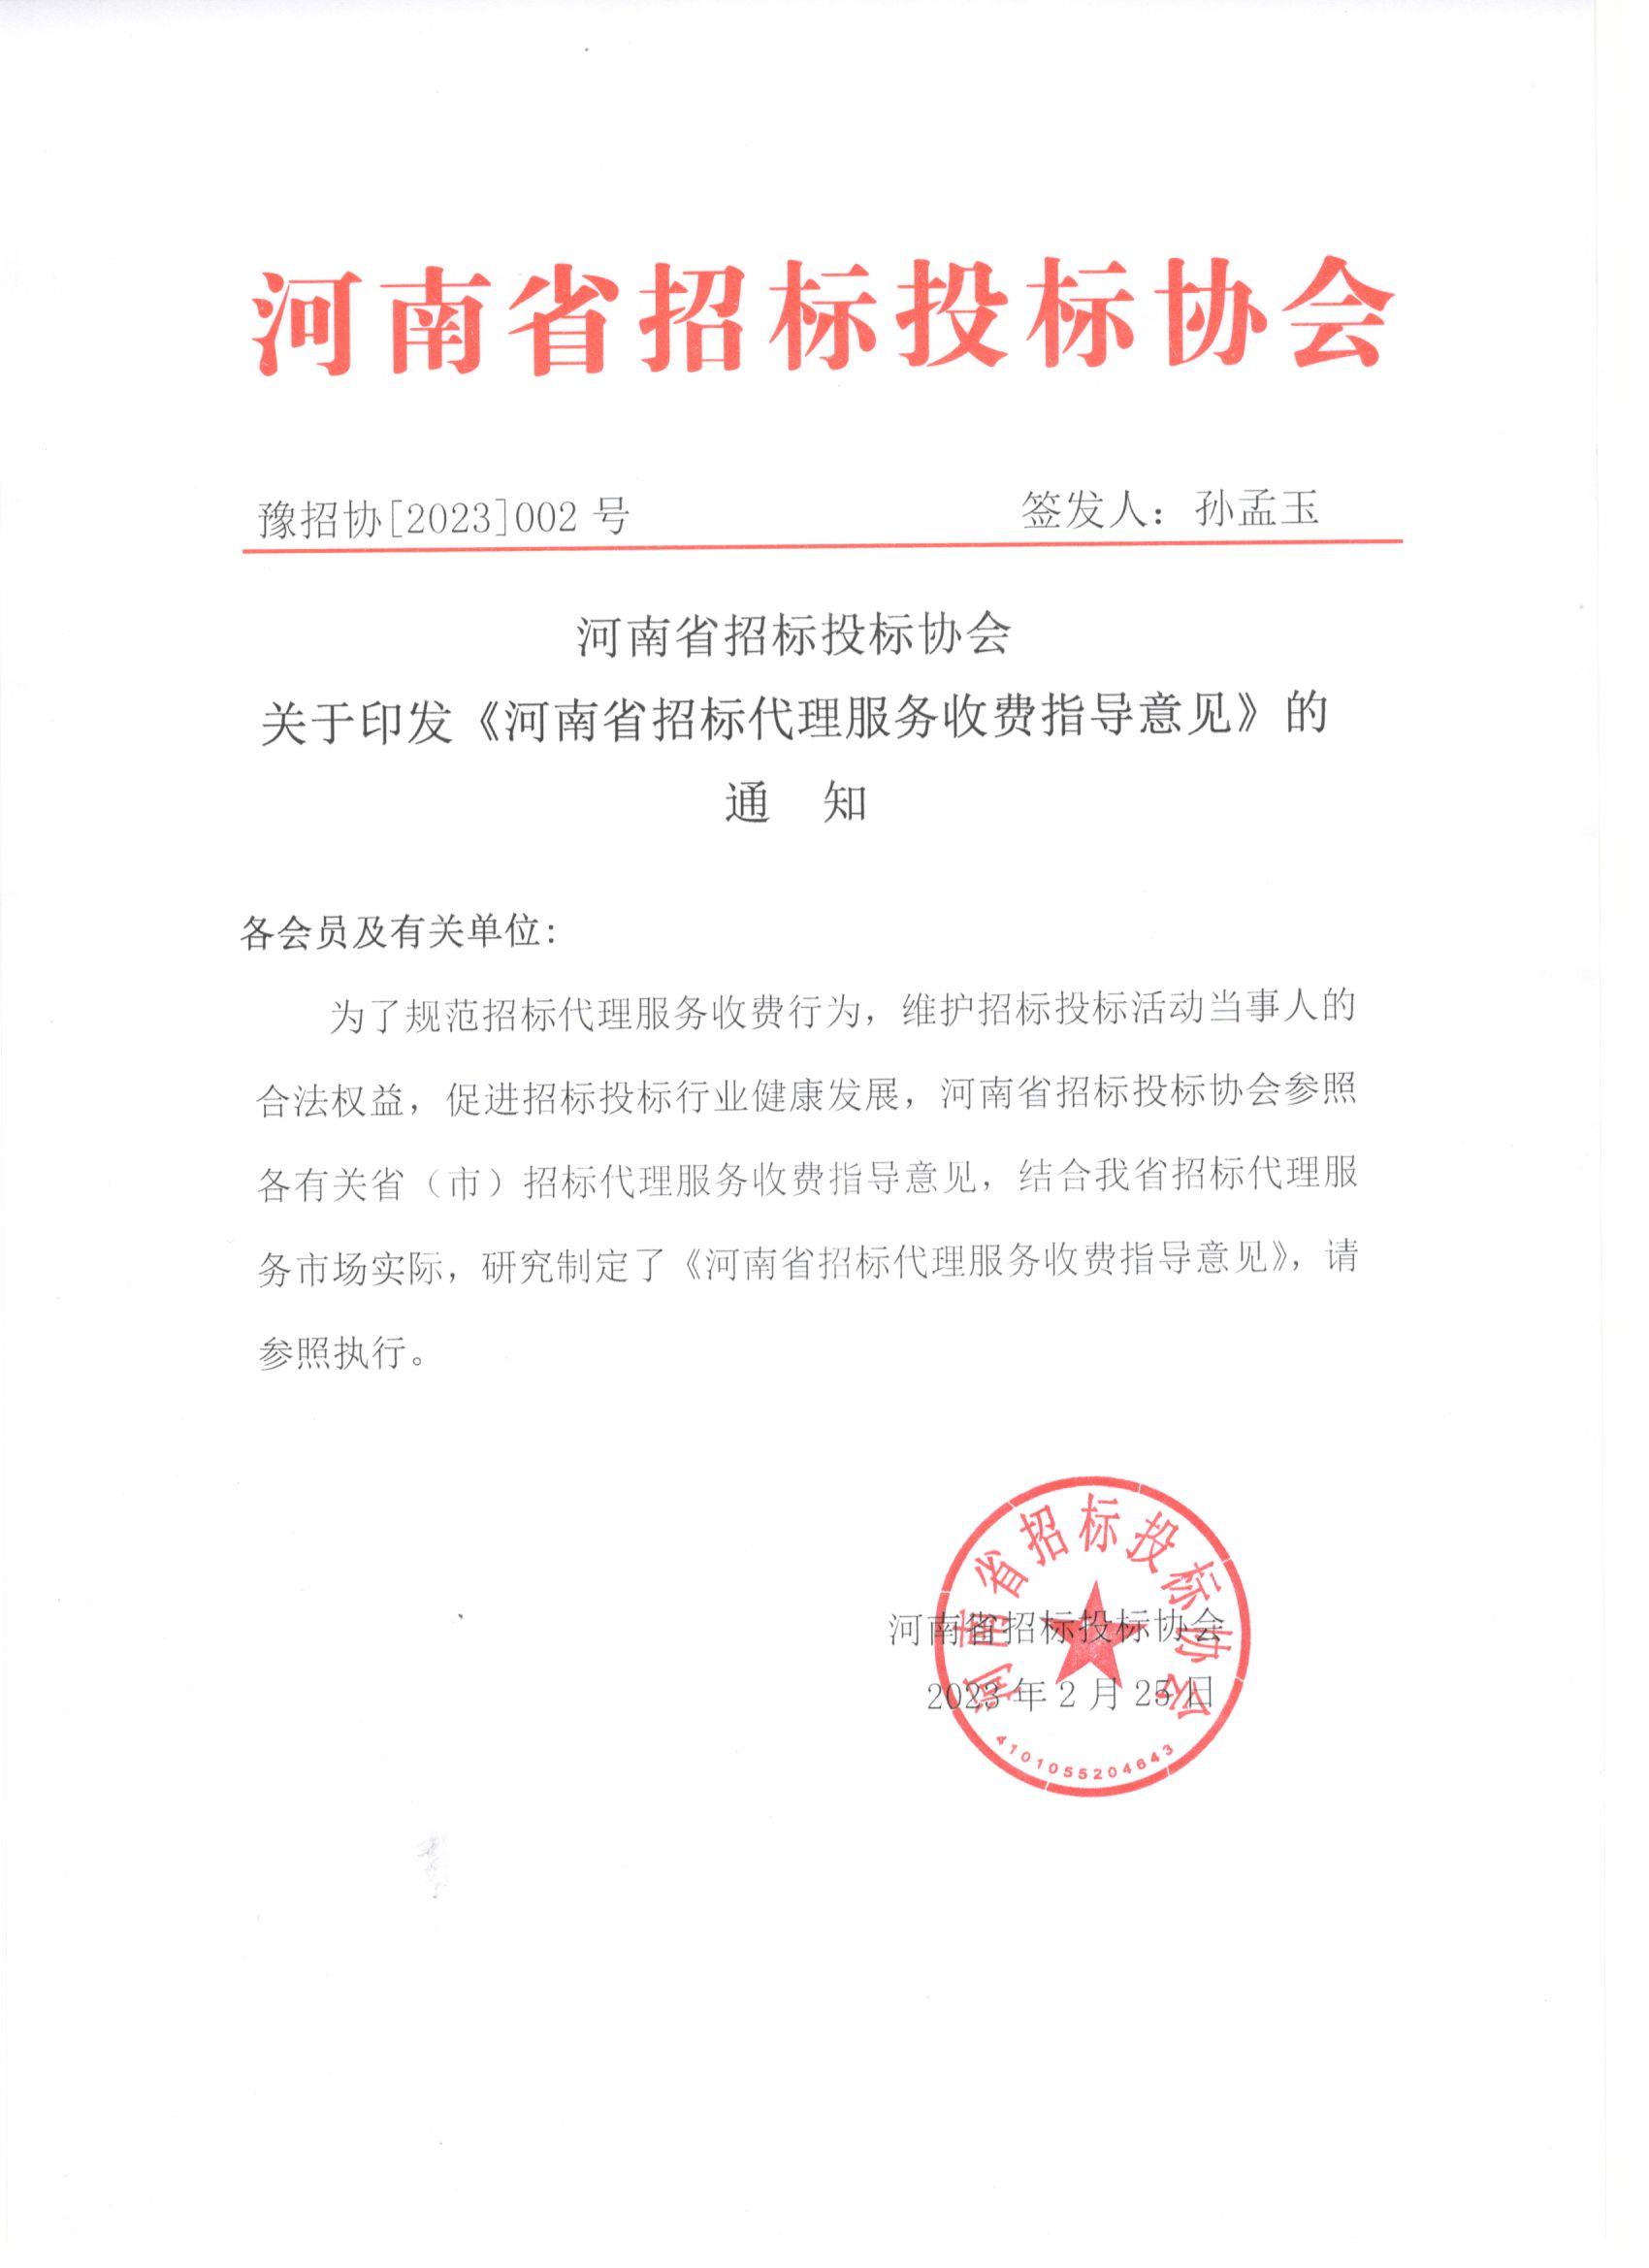 河南省招标投标协会发布招标代理服务收费指导意见